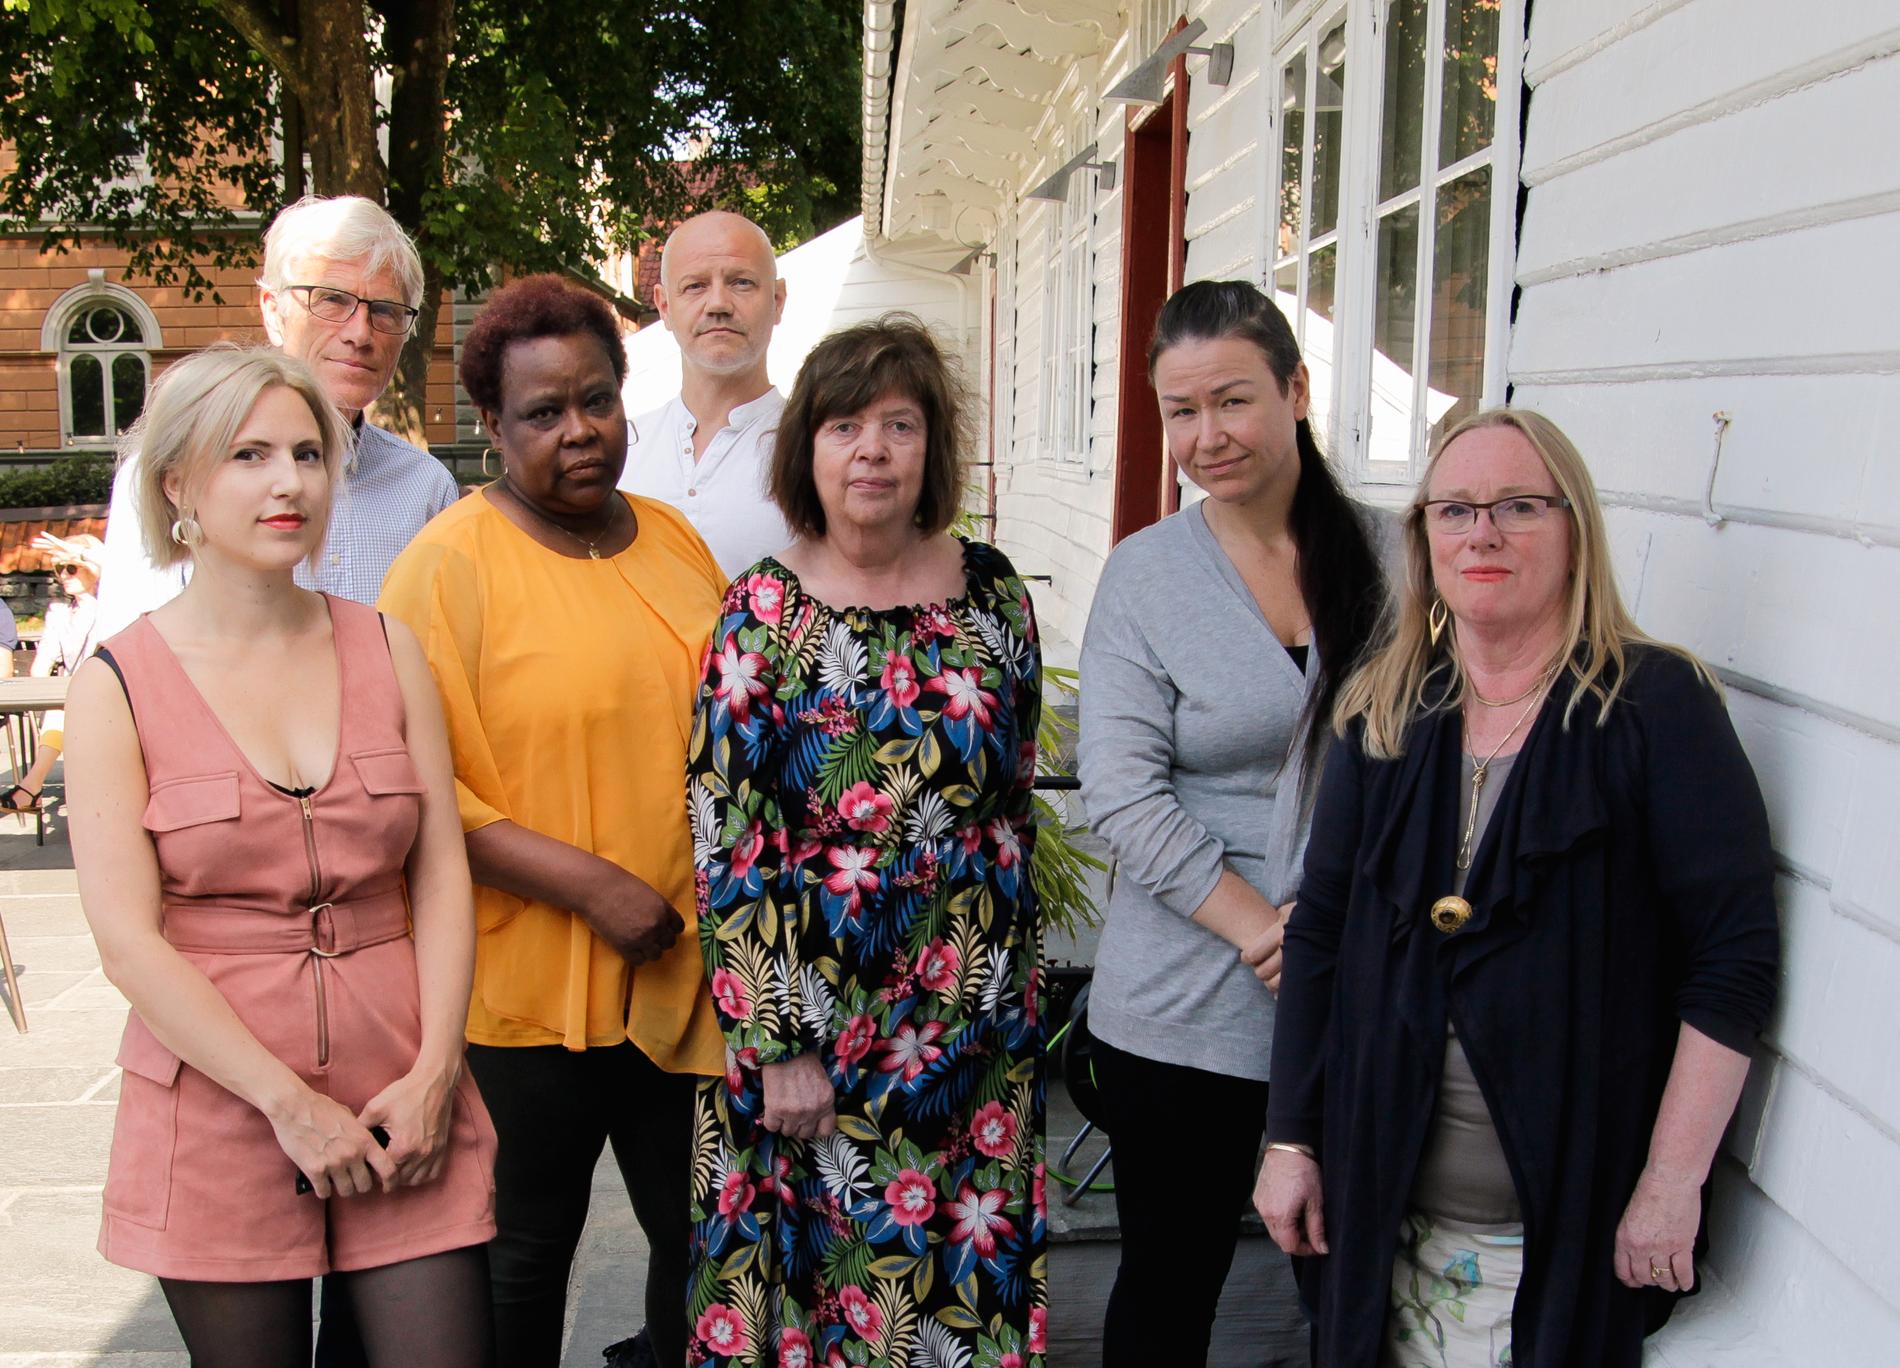 Representanter for Sp, Rødt, FNB og Pensjonistpartiet sier nei til «Akson». Fra venstre: Sofie Marhaug (Rødt), Olav Reikerås (Sp), Chiku Ali (Rødt), Ronny Grønsdal (FNB), Turid Krogh Sveen (Pp), Torunn Remme (FNB), Anne Brit Reigstad (Sp).